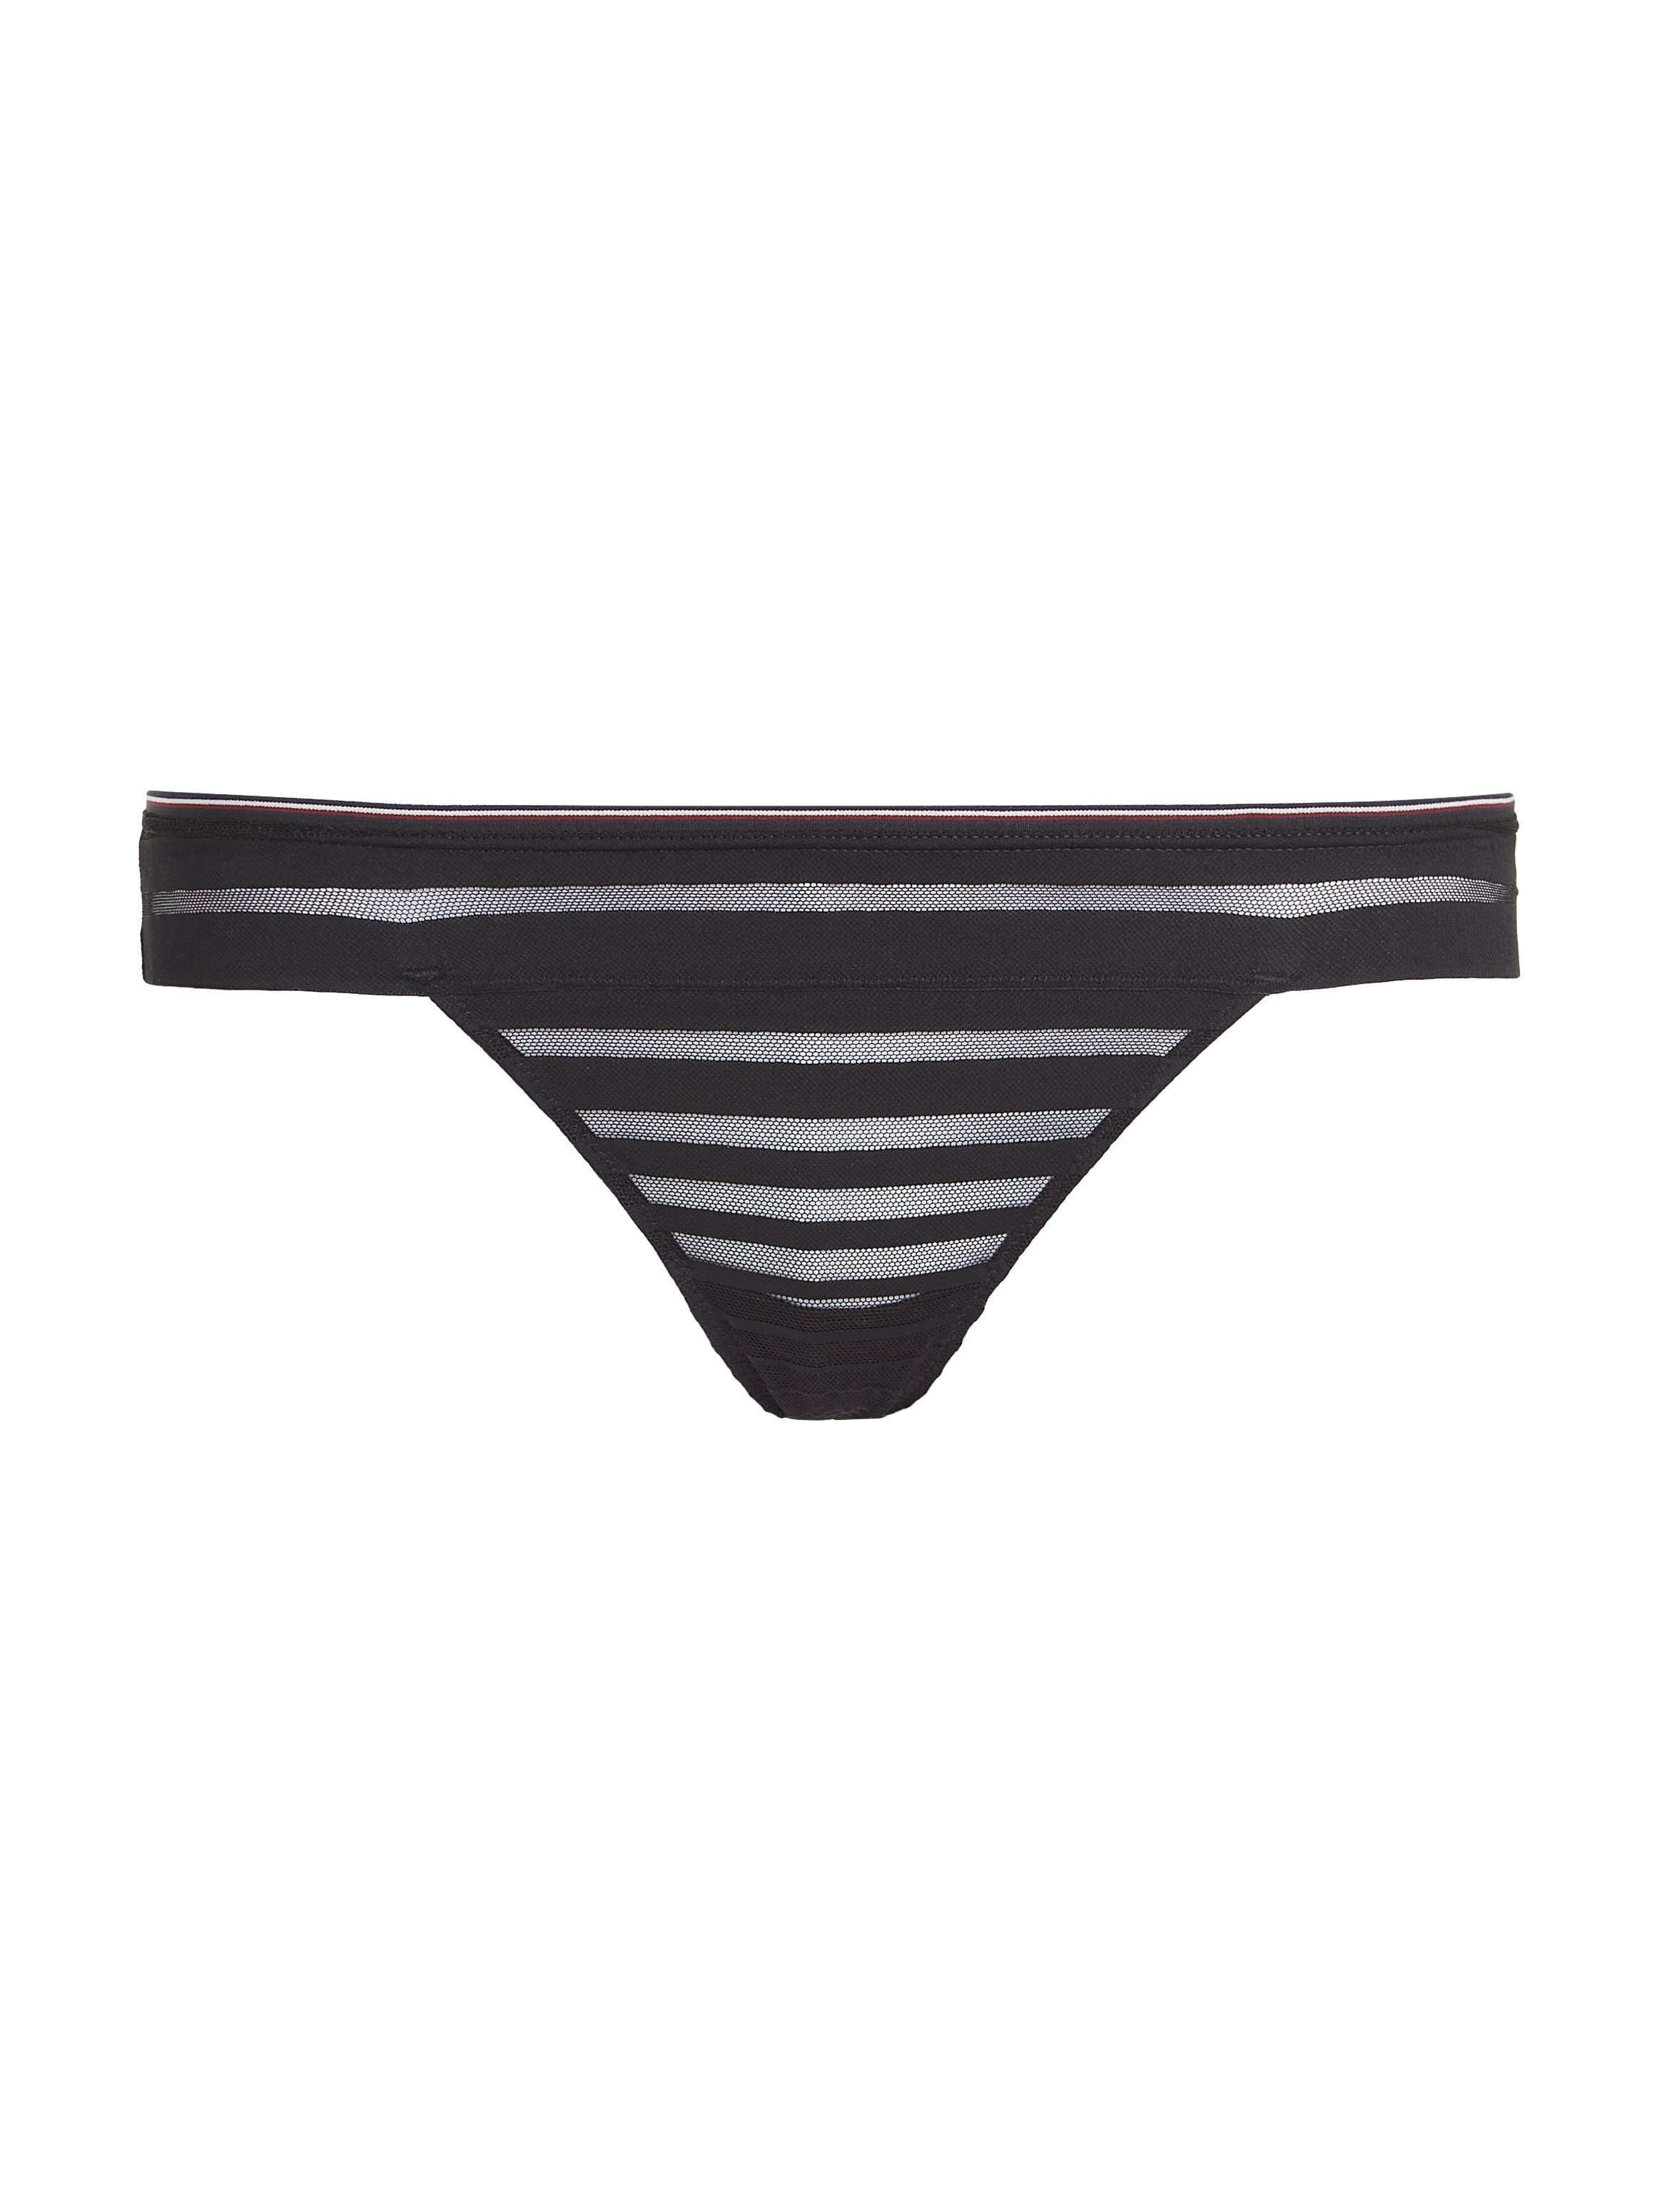 Hilfiger Labelfarben Underwear mit in Tommy THONG T-String Bund Kontrastband am